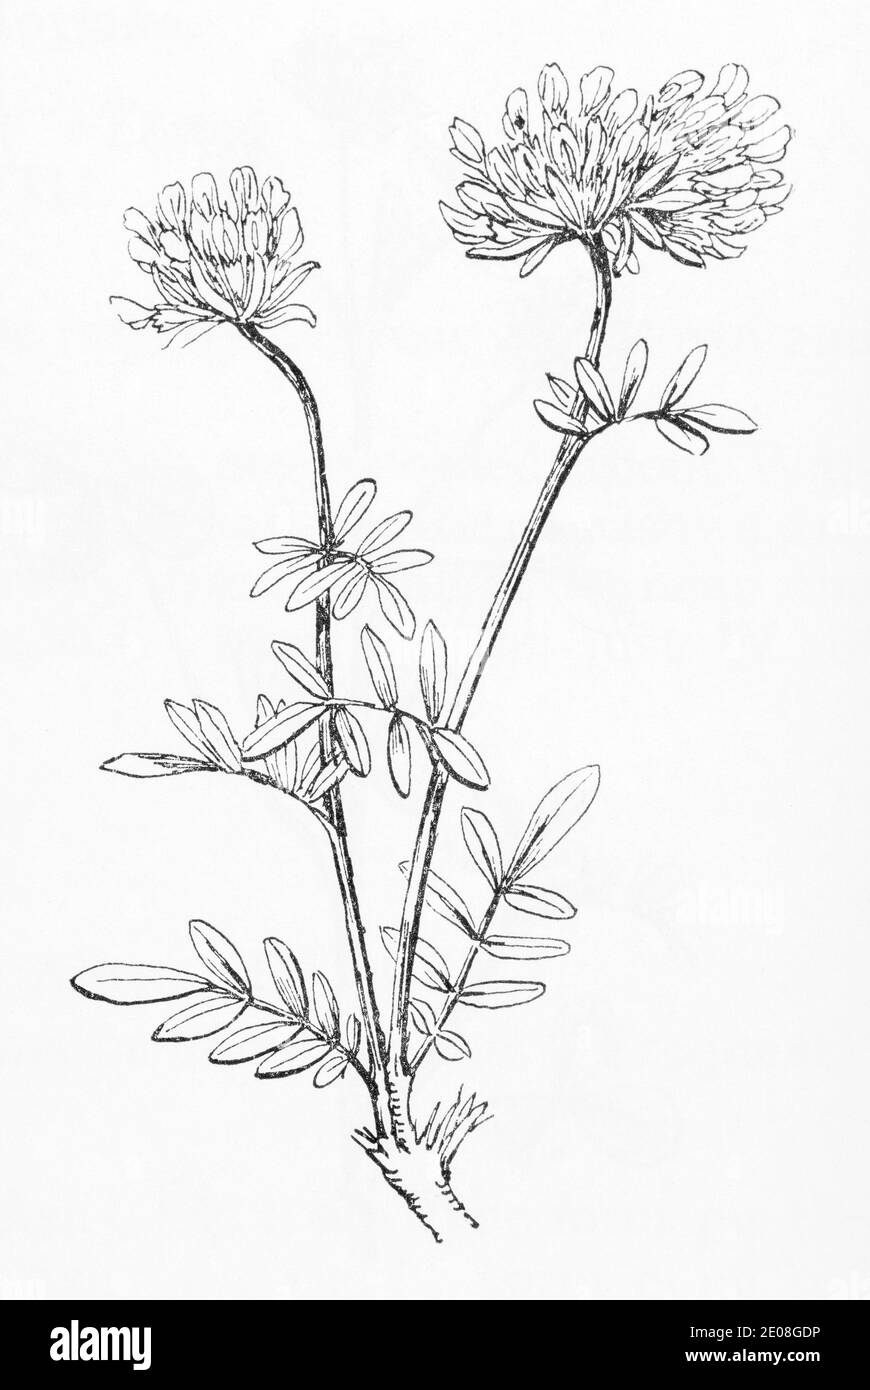 Vecchia illustrazione botanica incisione di Kidney vetch / Antyllis vulnerabilità. Pianta di erbe medicinali tradizionali. Vedere Note Foto Stock